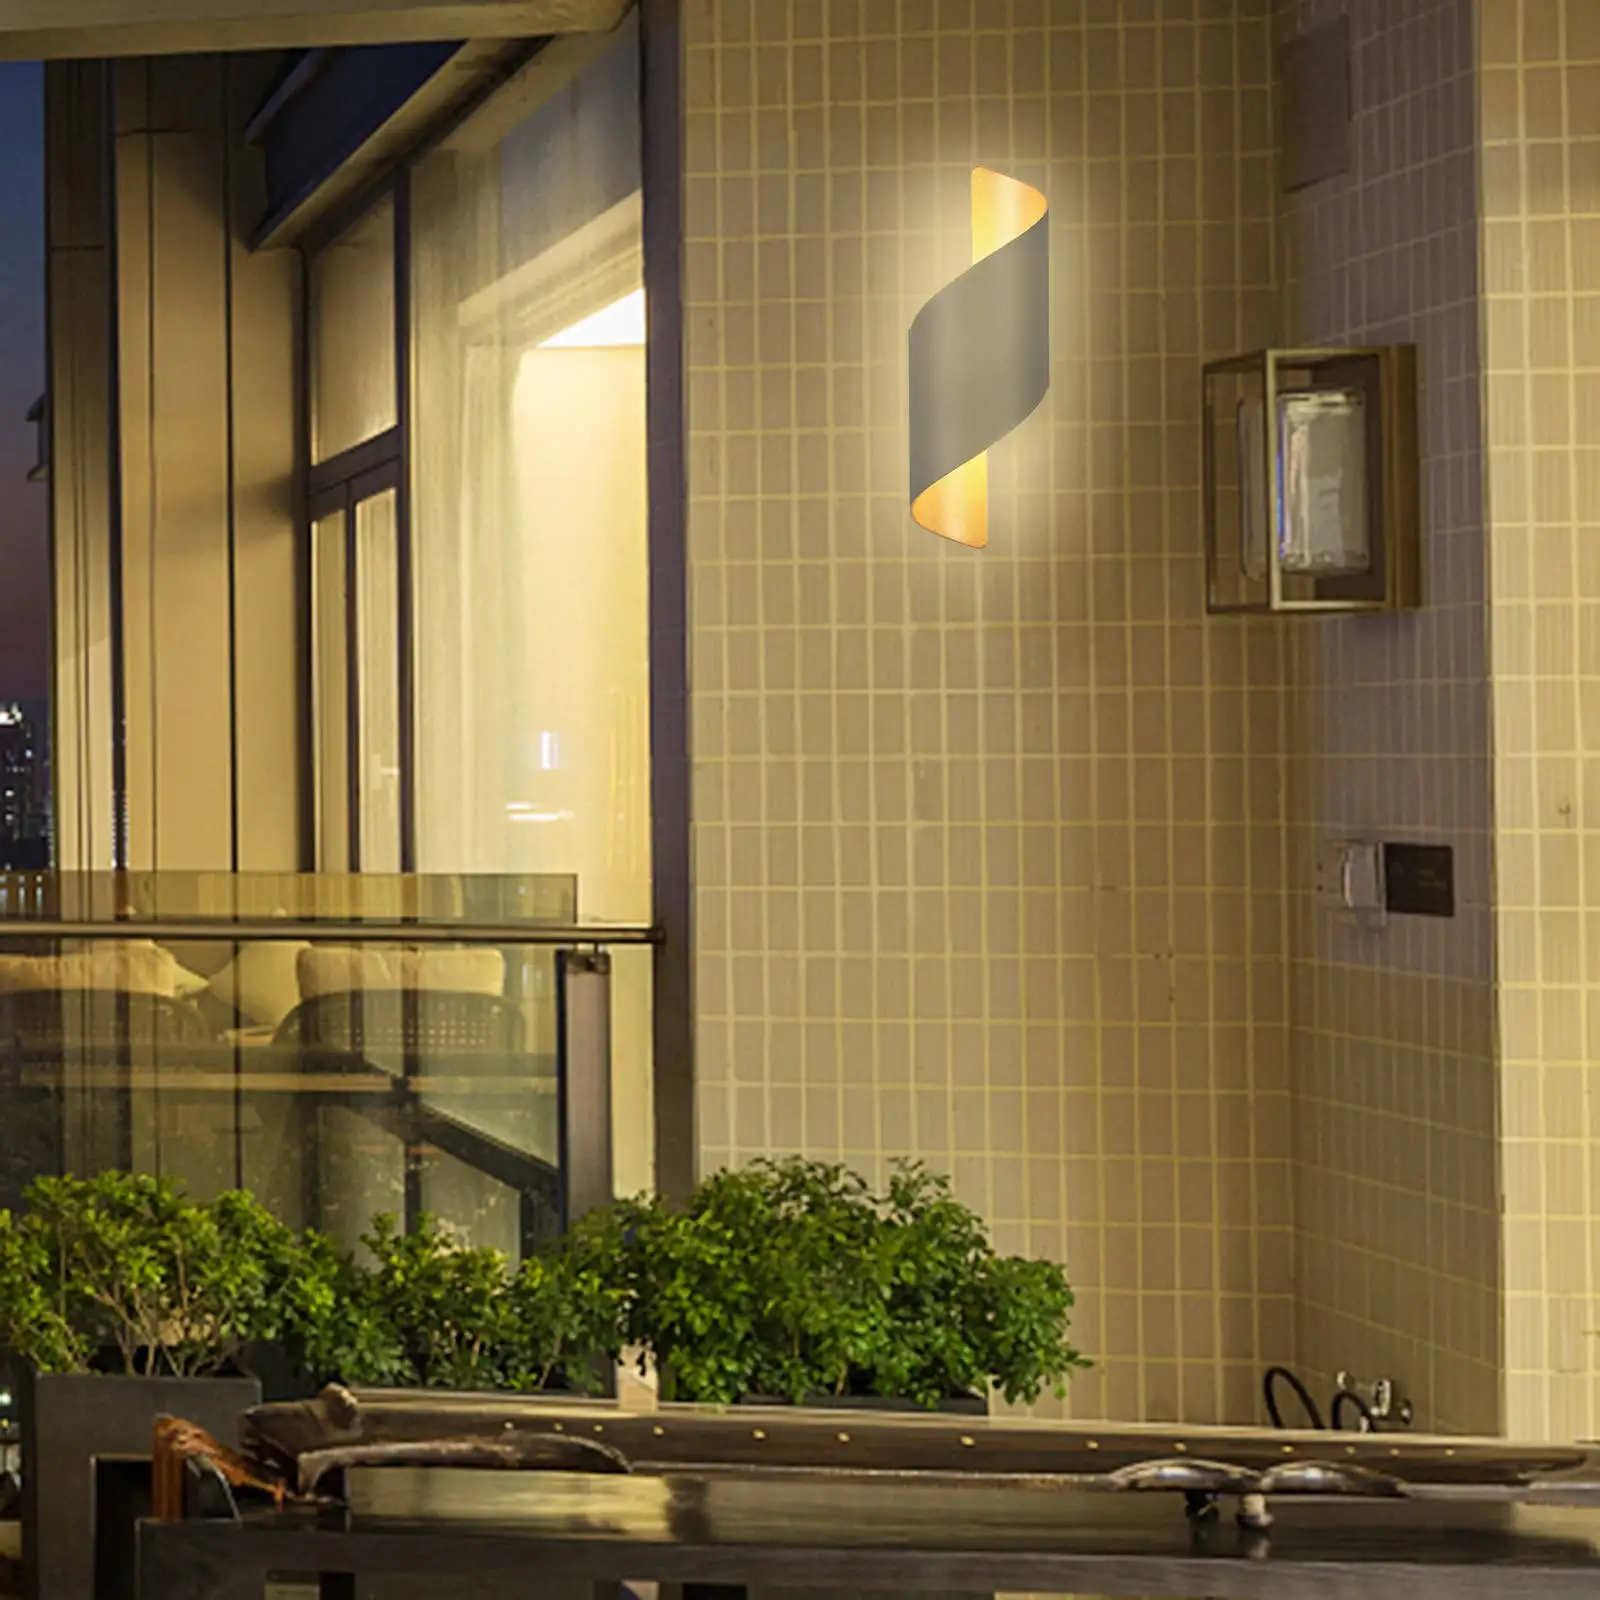 Waterproof Wall Light Fixtures Sconce Lighting IP65 for Indoor Outdoor Cafes Dining Room